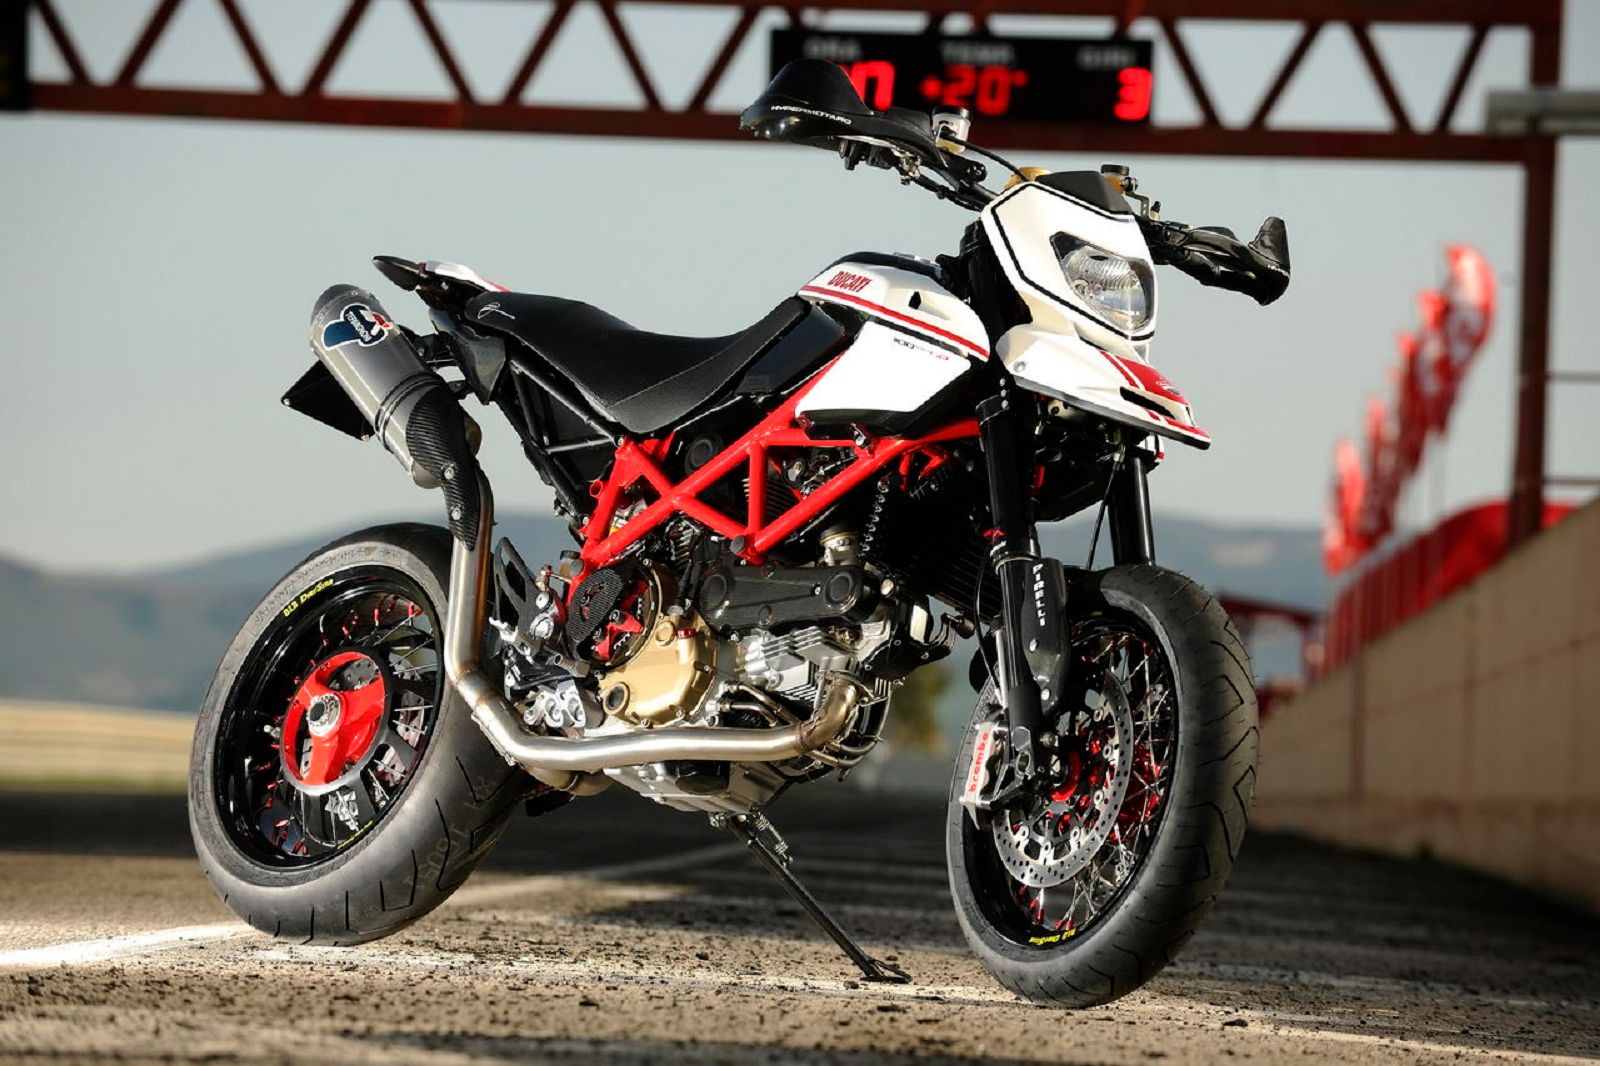 2012 Ducati Hypermotard 1100 EVO